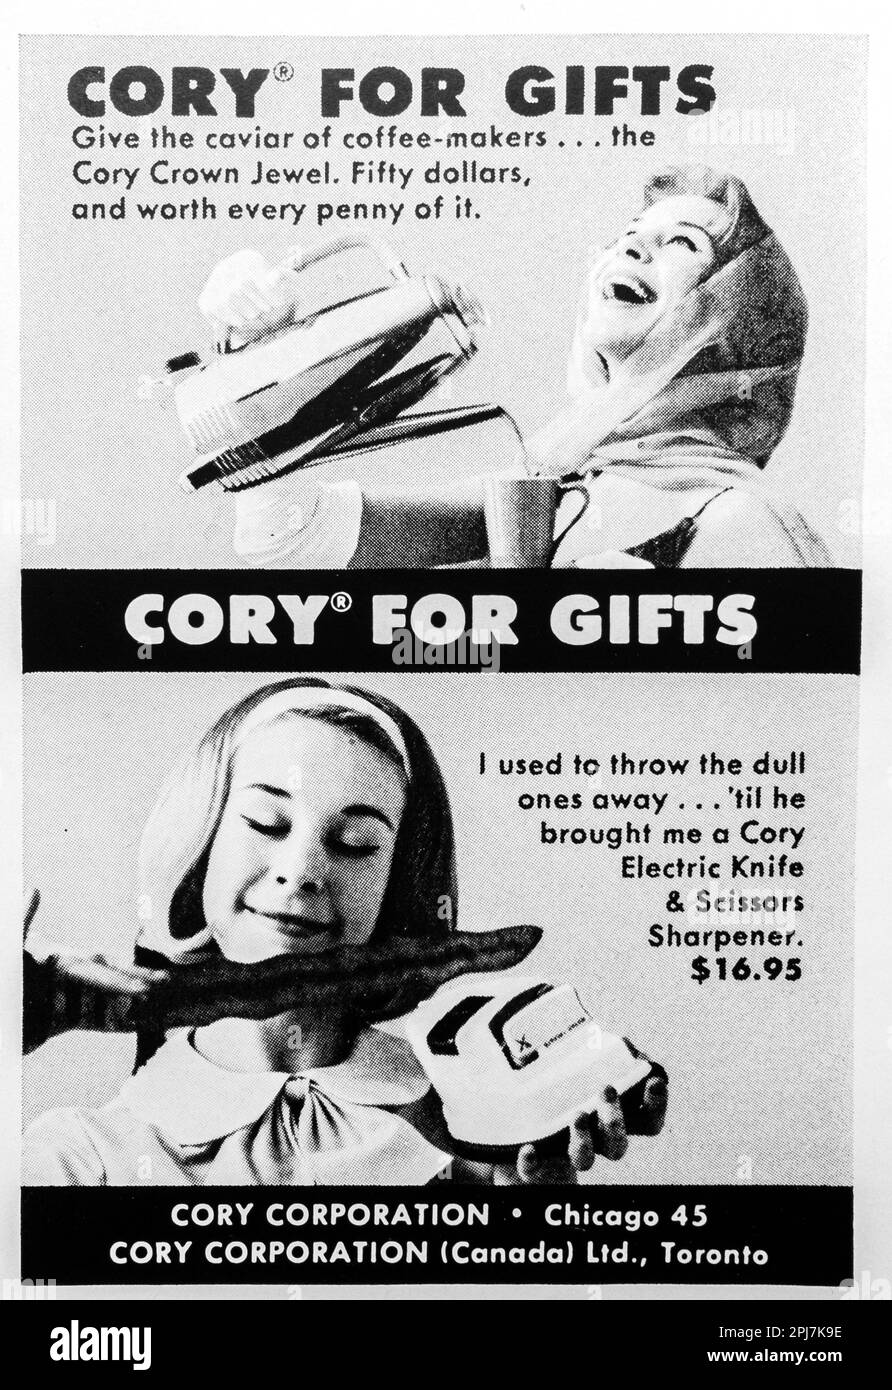 Cory Corporation - Knfie elettrica, forbici, affilatrice, utensili da cucina spot in una rivista NatGeo, novembre 1959 Foto Stock